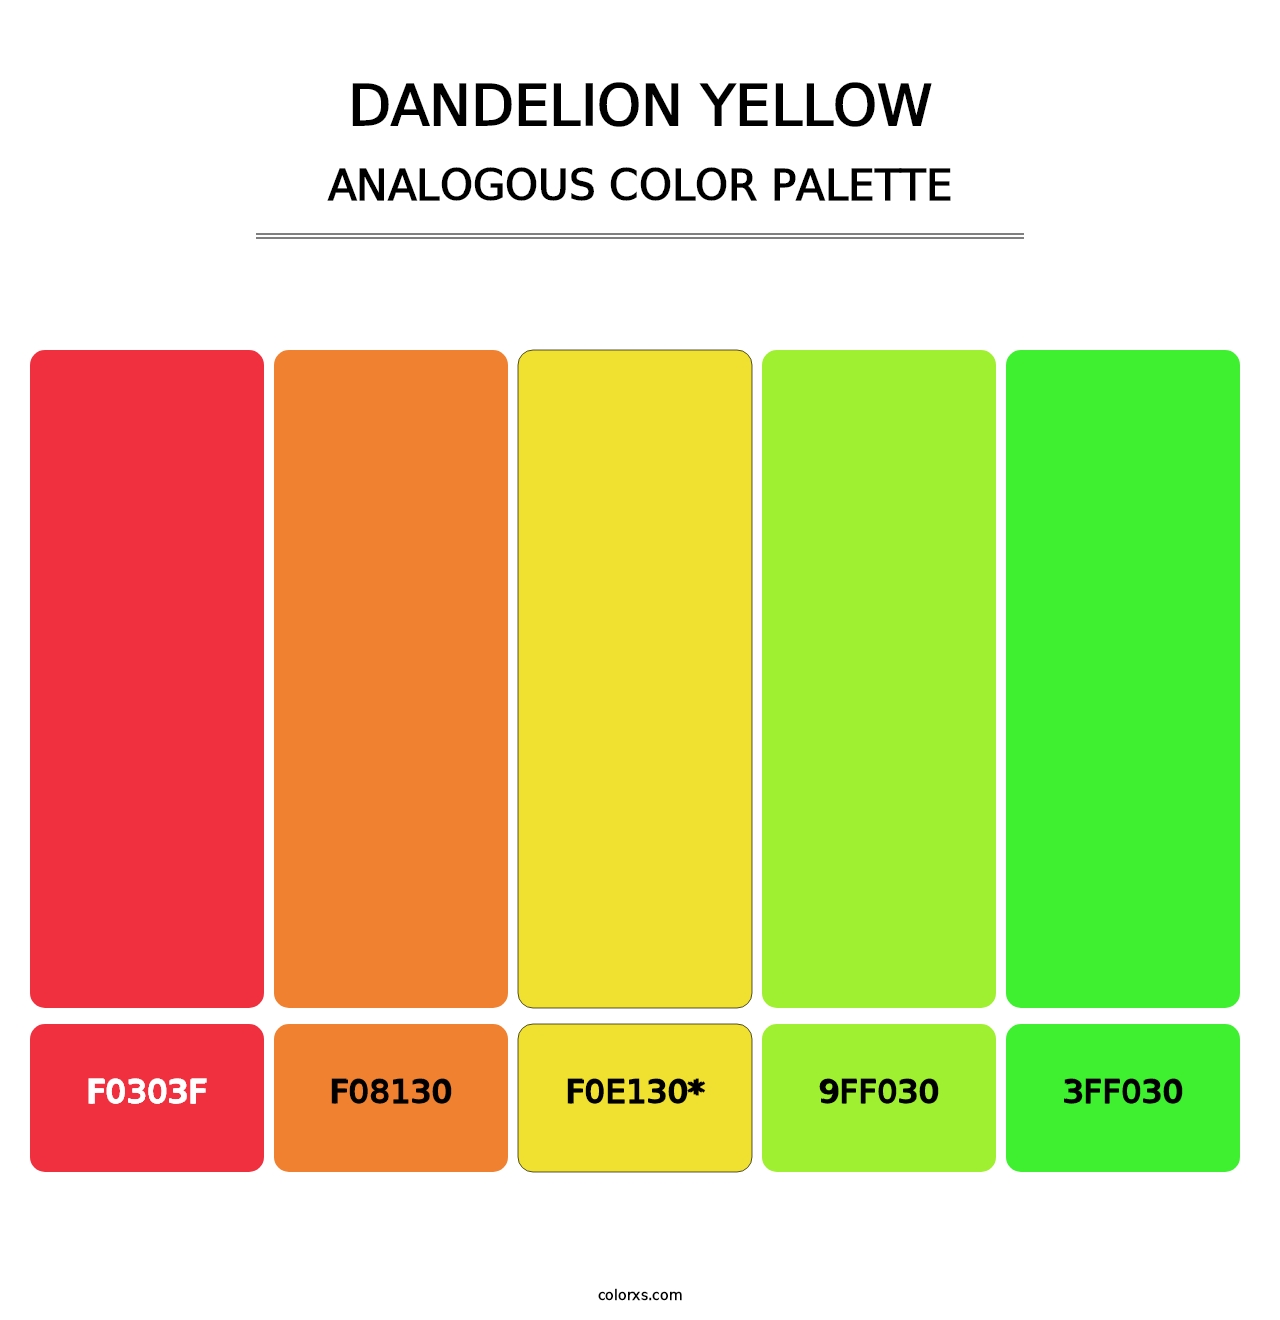 Dandelion Yellow - Analogous Color Palette